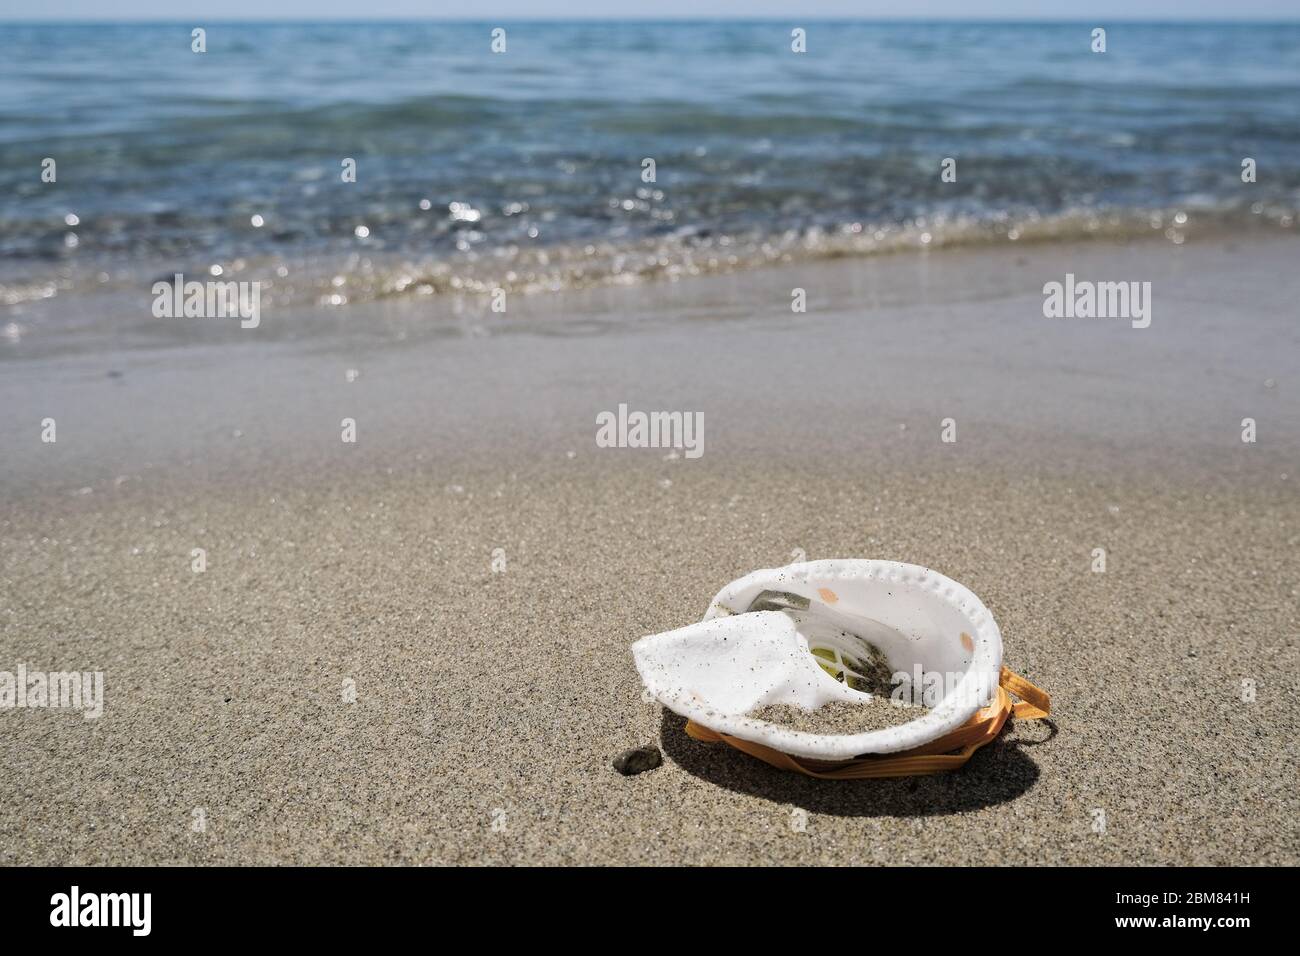 Maschera protettiva virus spazzatura spazzatura sulla spiaggia sabbiosa del mare, malattia di inquinamento del coronavirus Foto Stock